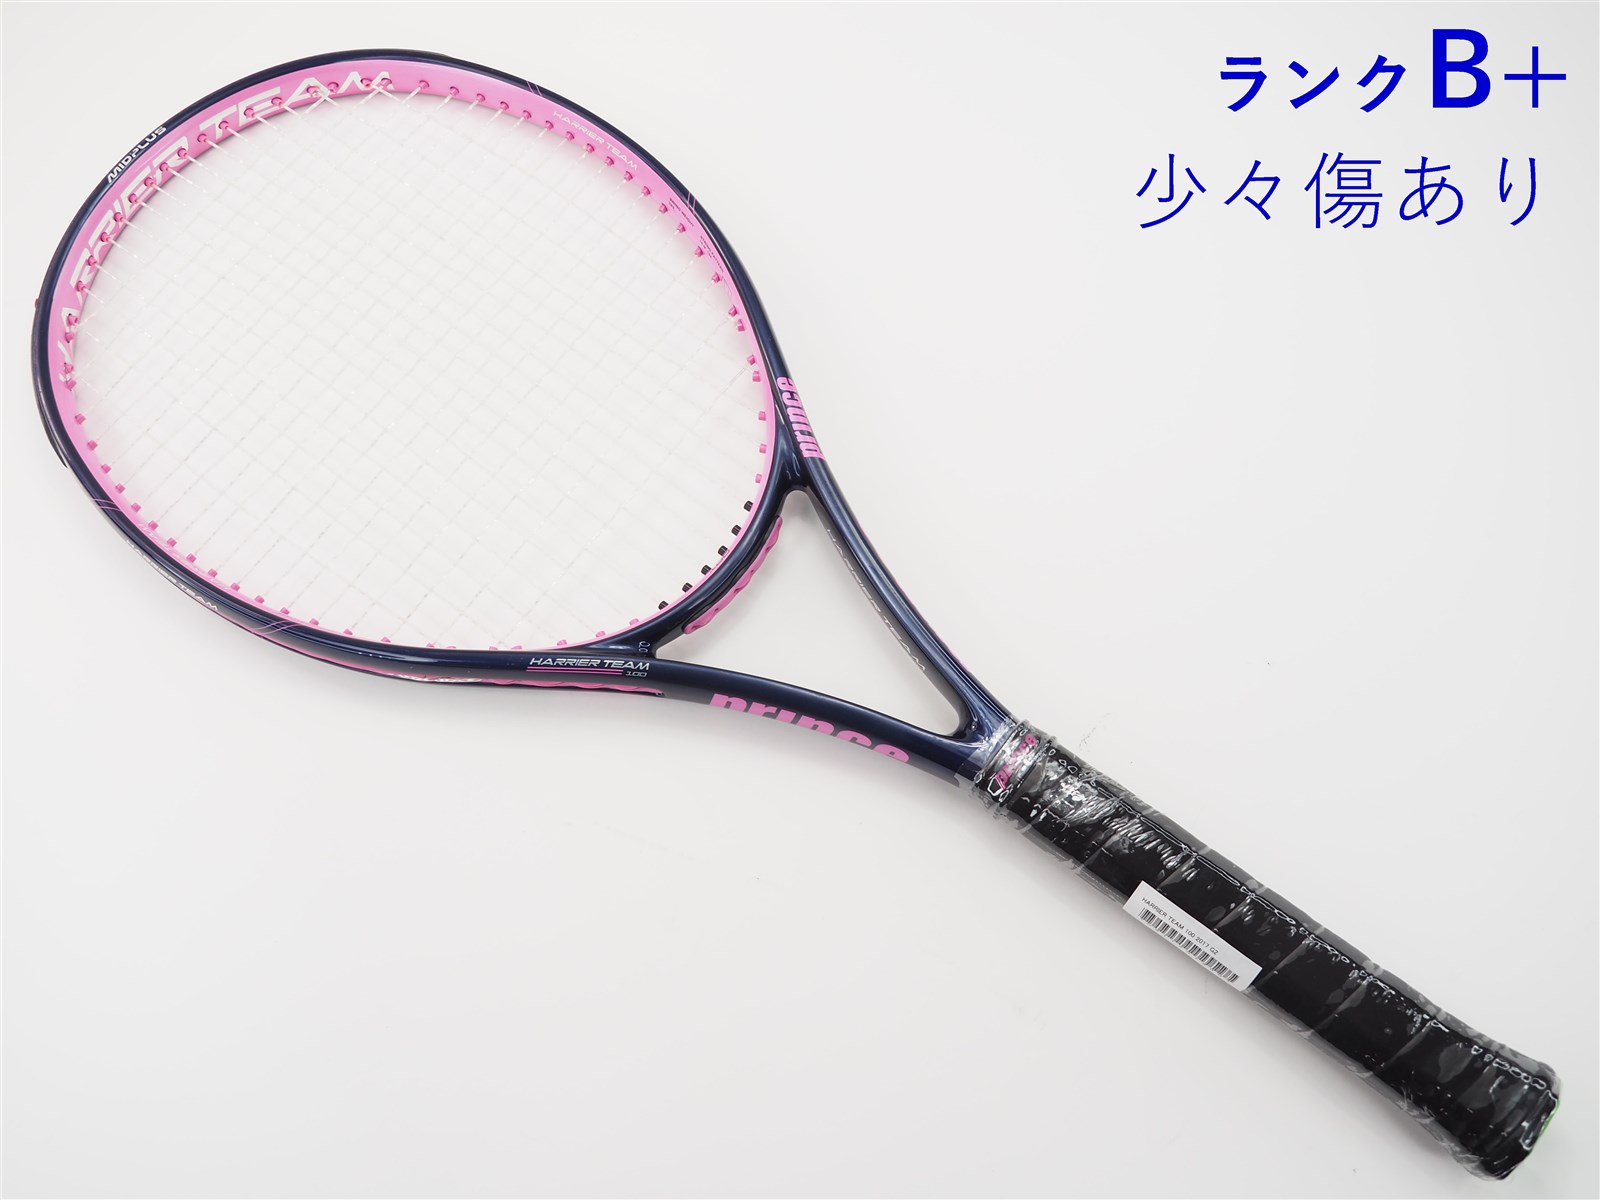 テニスラケット プリンス ハリアー チーム 100 2017年モデル (G2